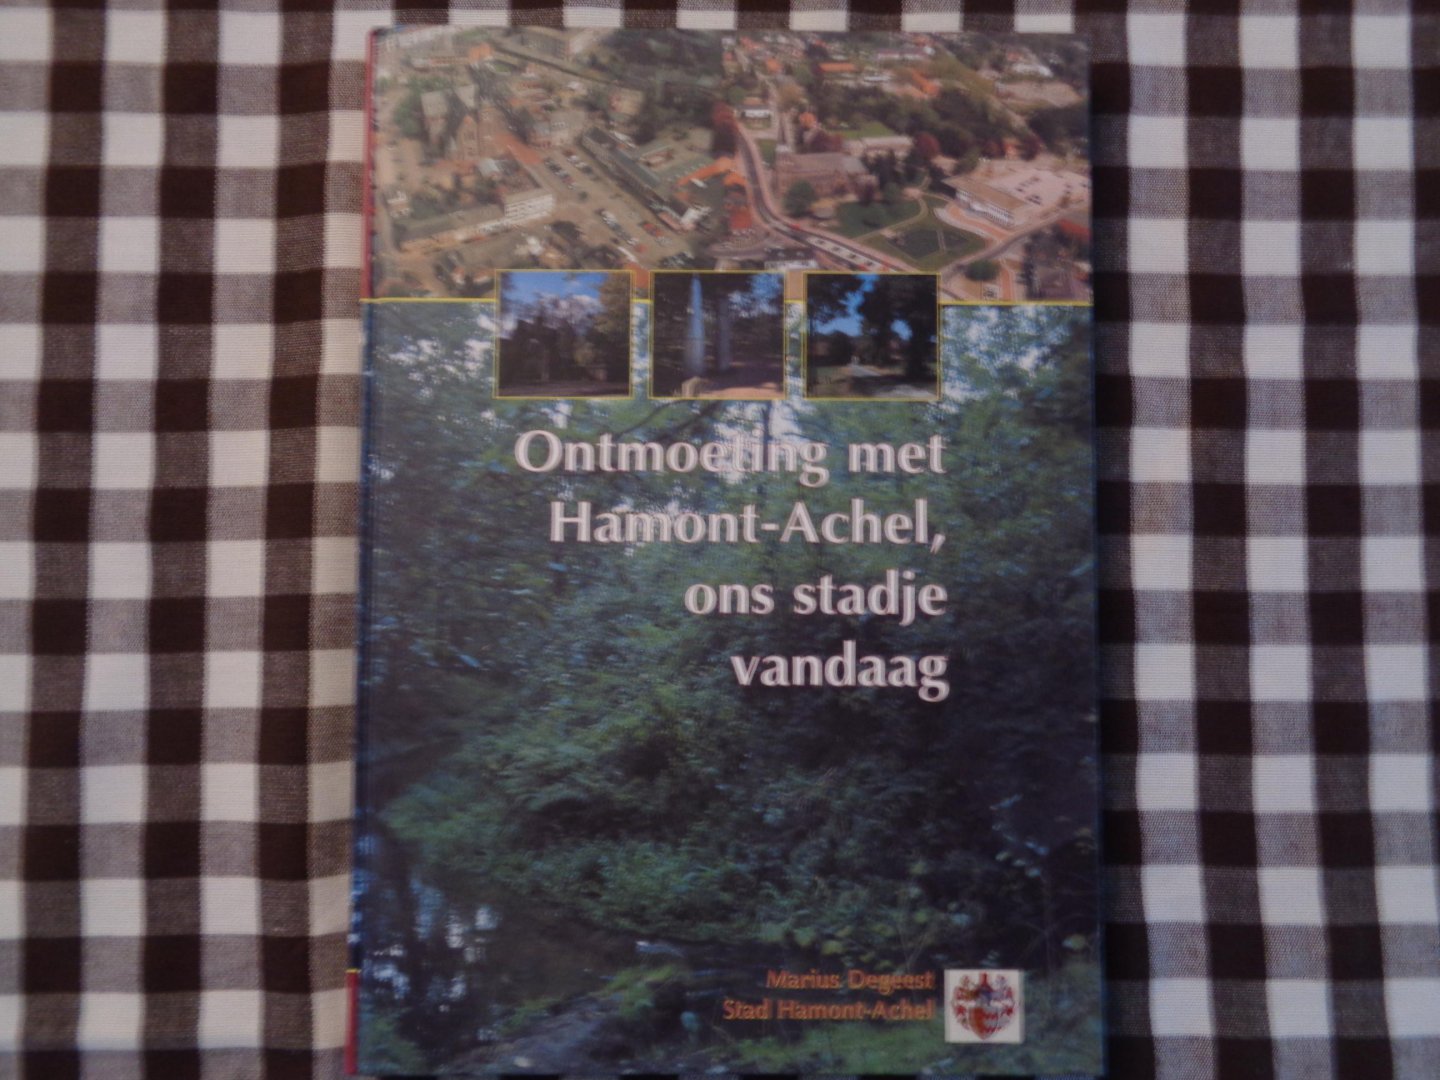 Degeest, M. - Uitstapje door het stadje Hamond-Achel anno 2000 / druk 1